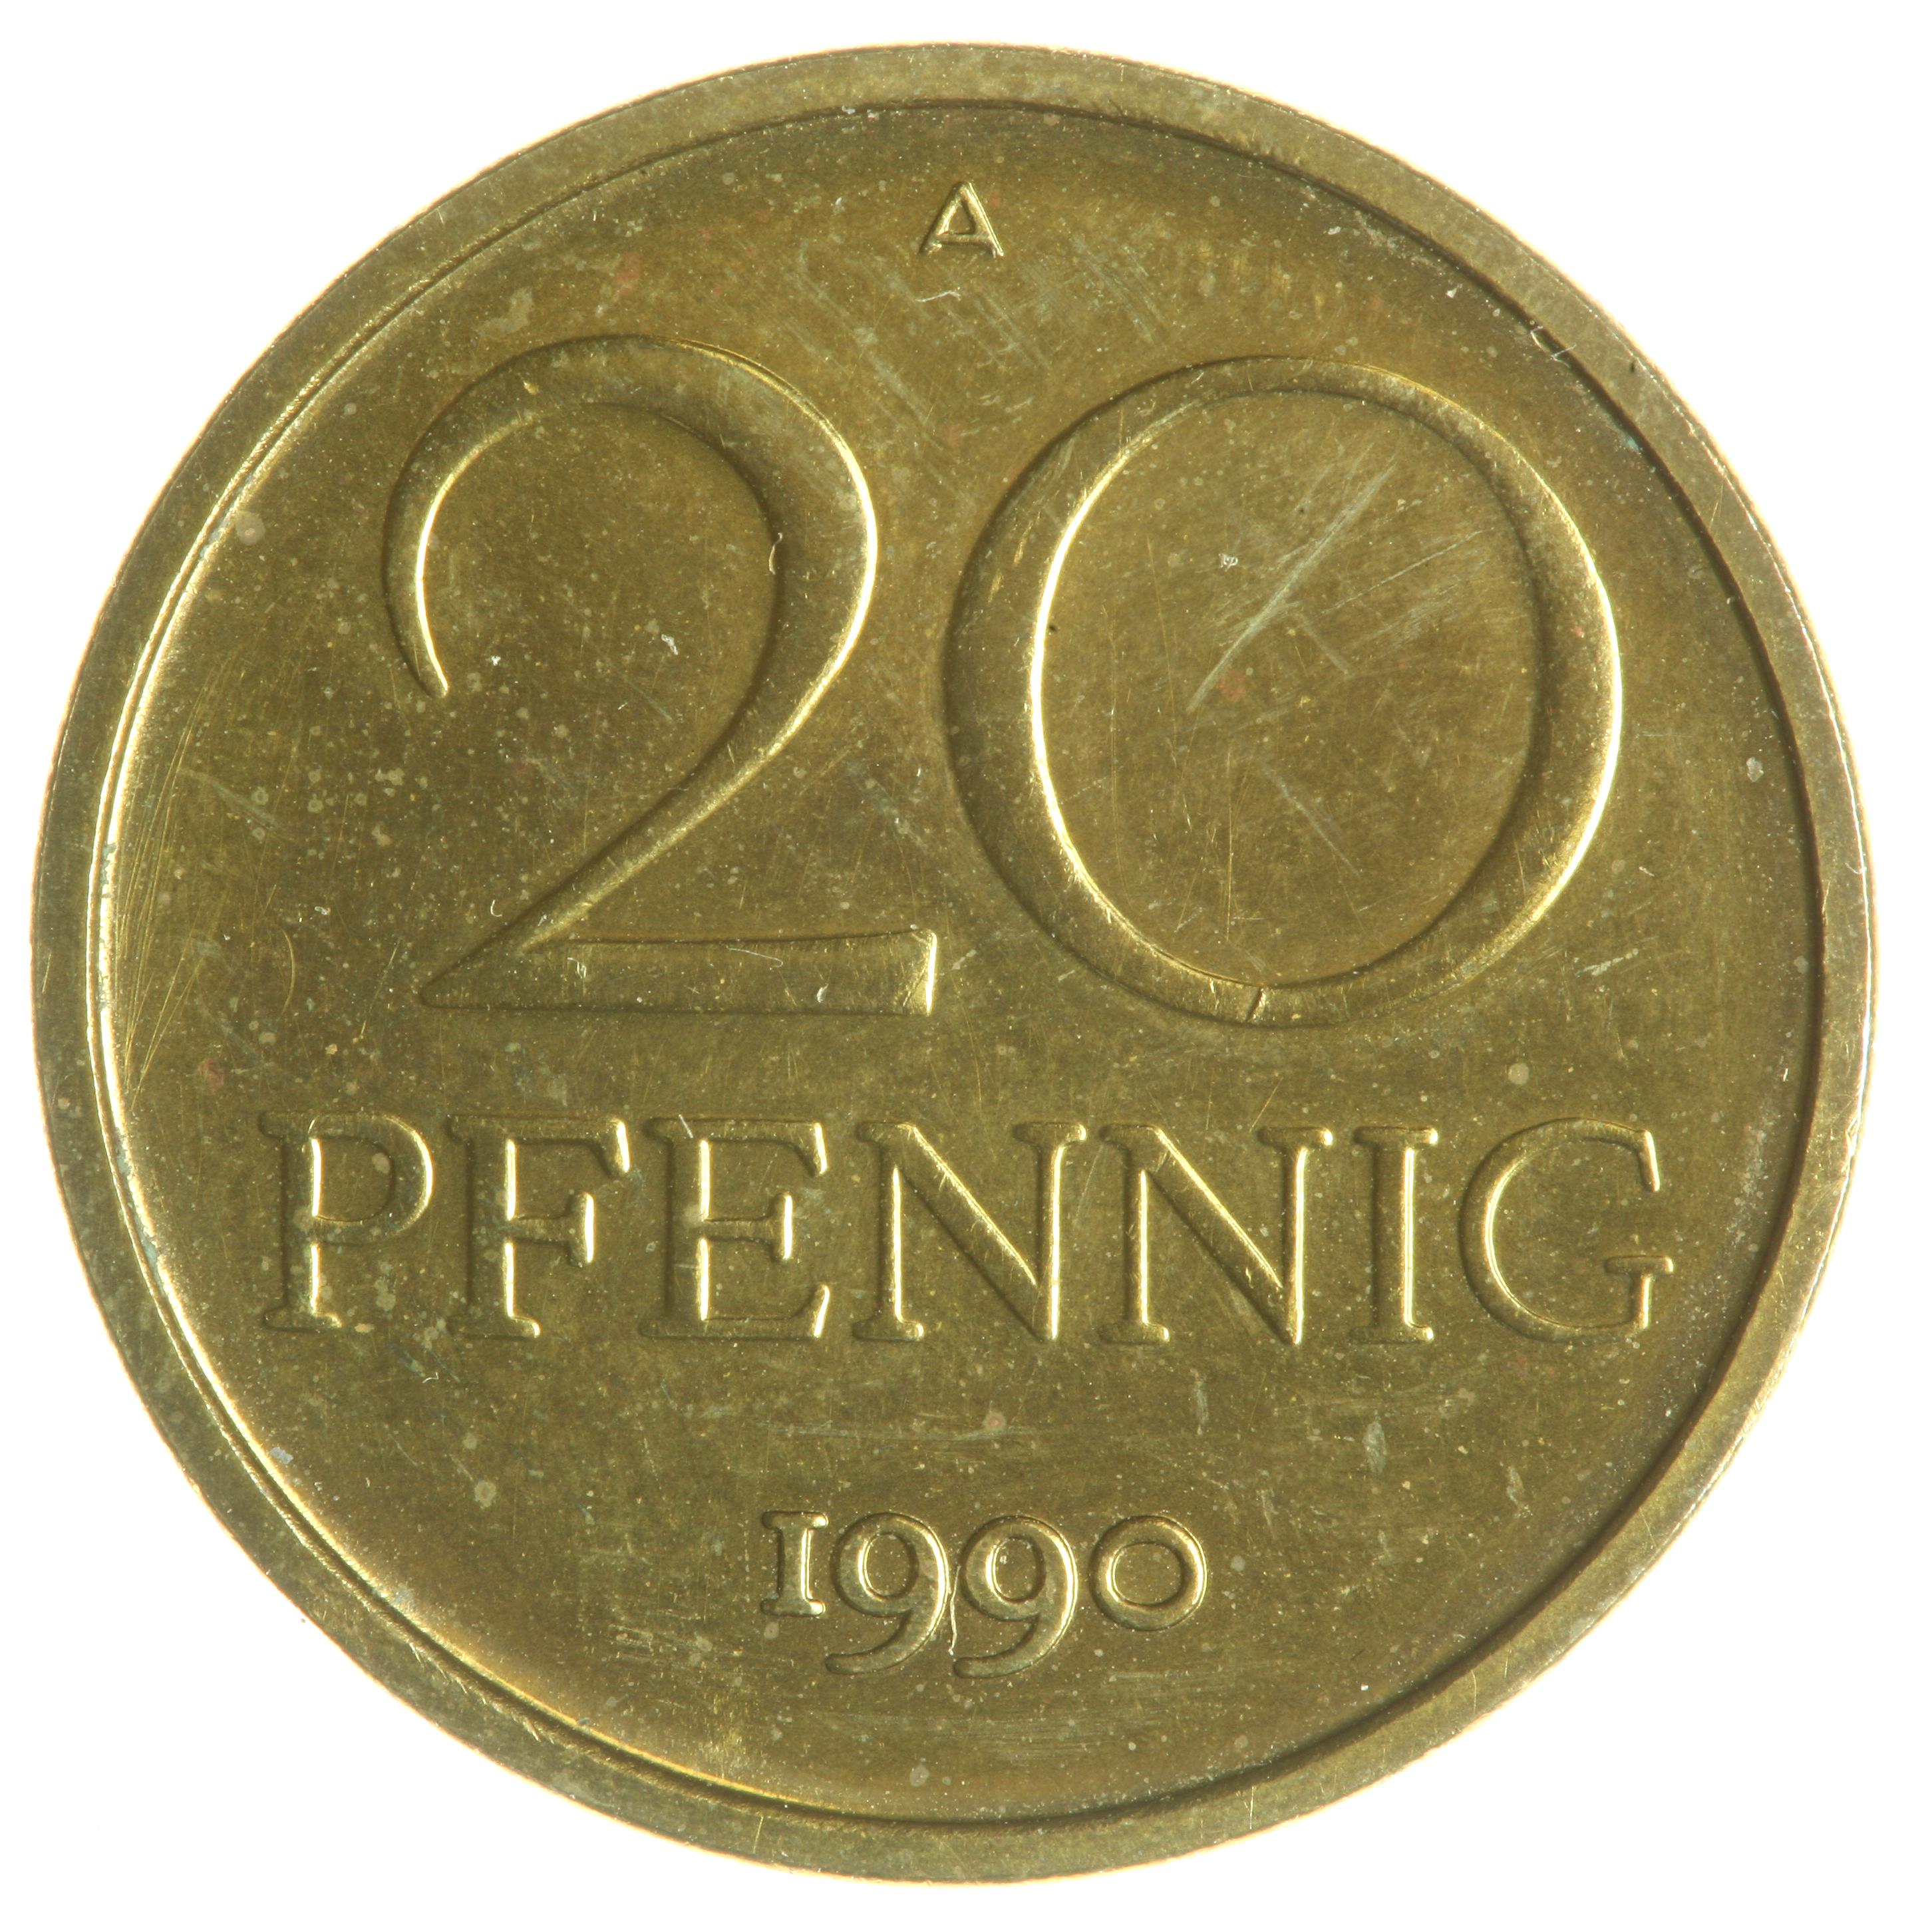 20-Pfennig coin - obverse